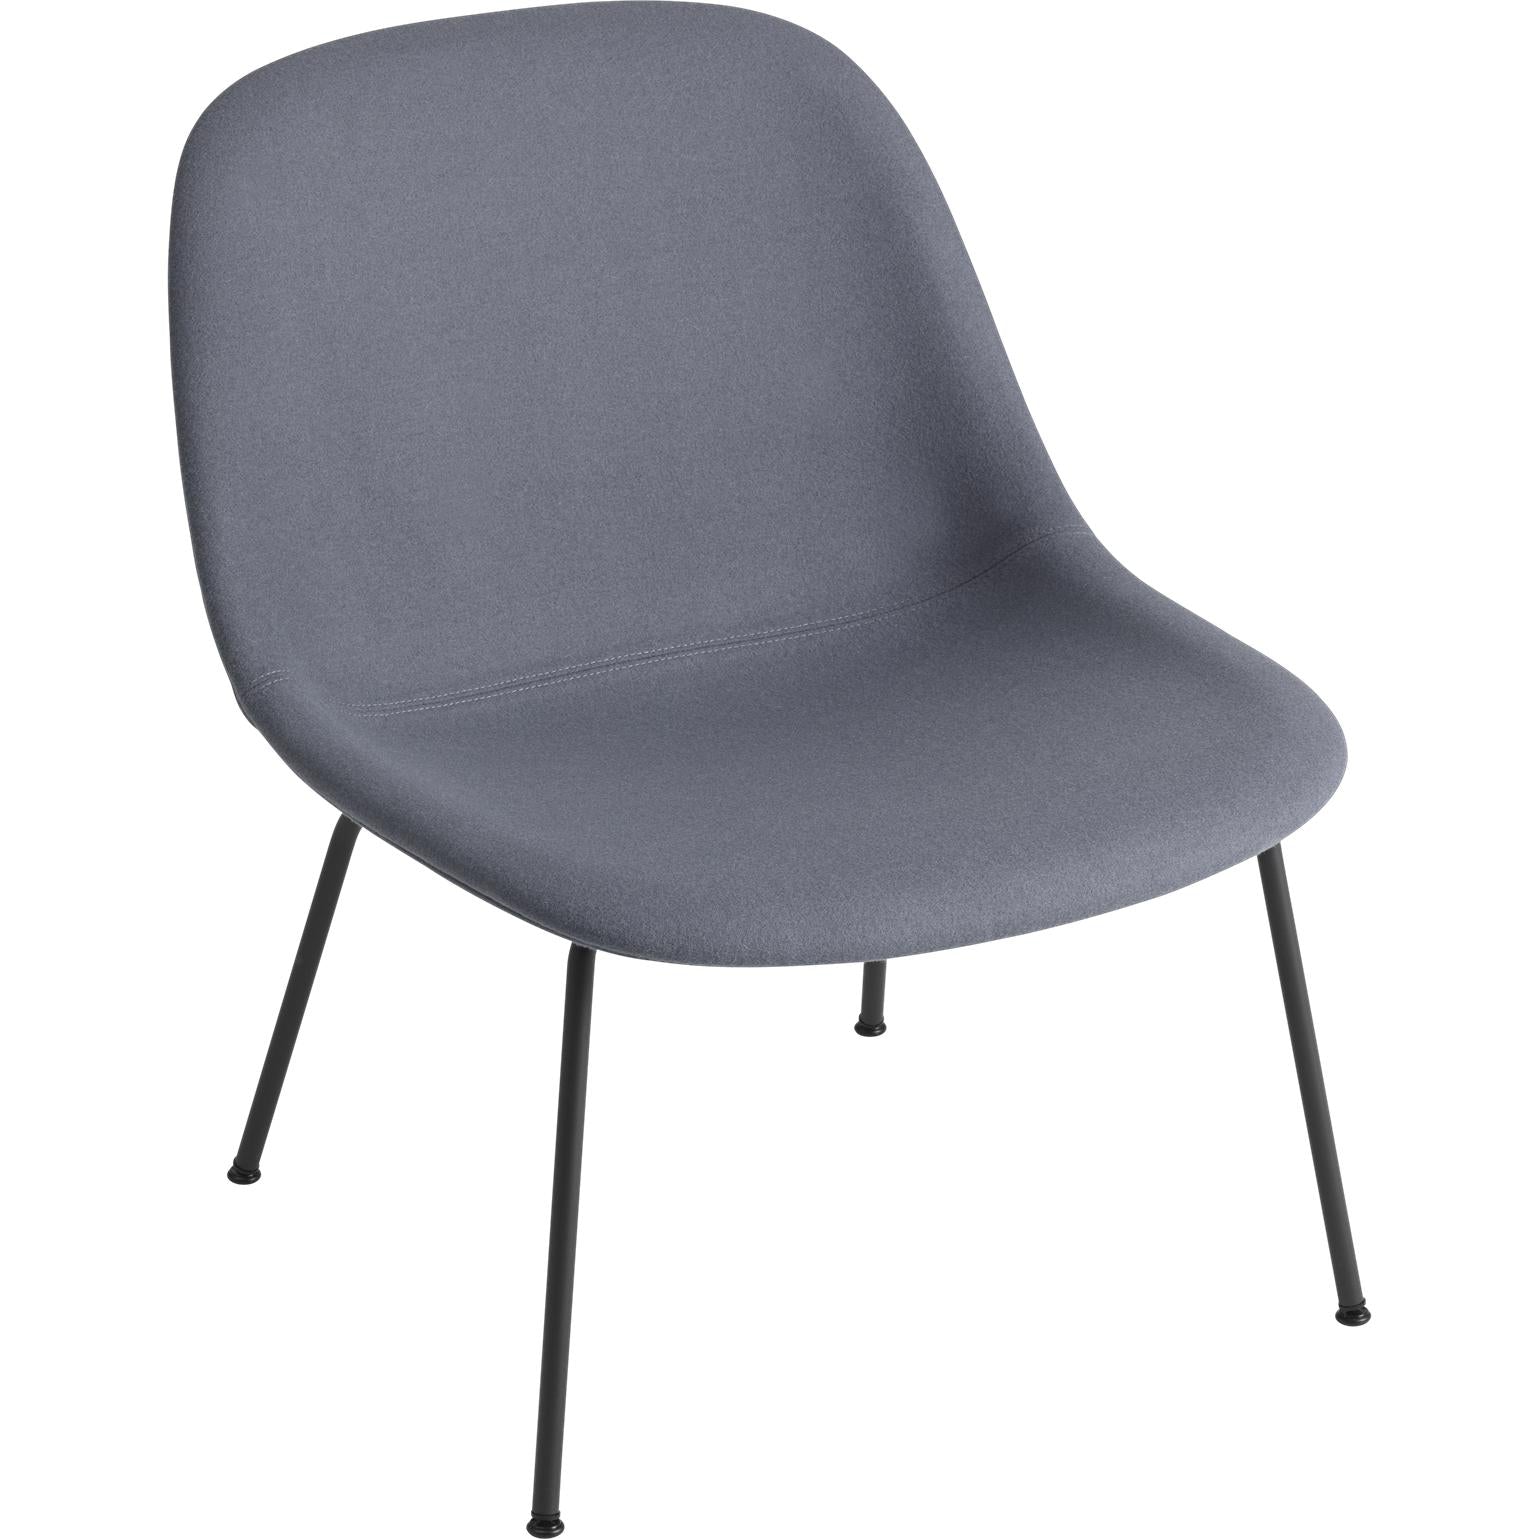 Base de tubo de sillón de fibra muuto, asiento de tela, negro/ divina 154